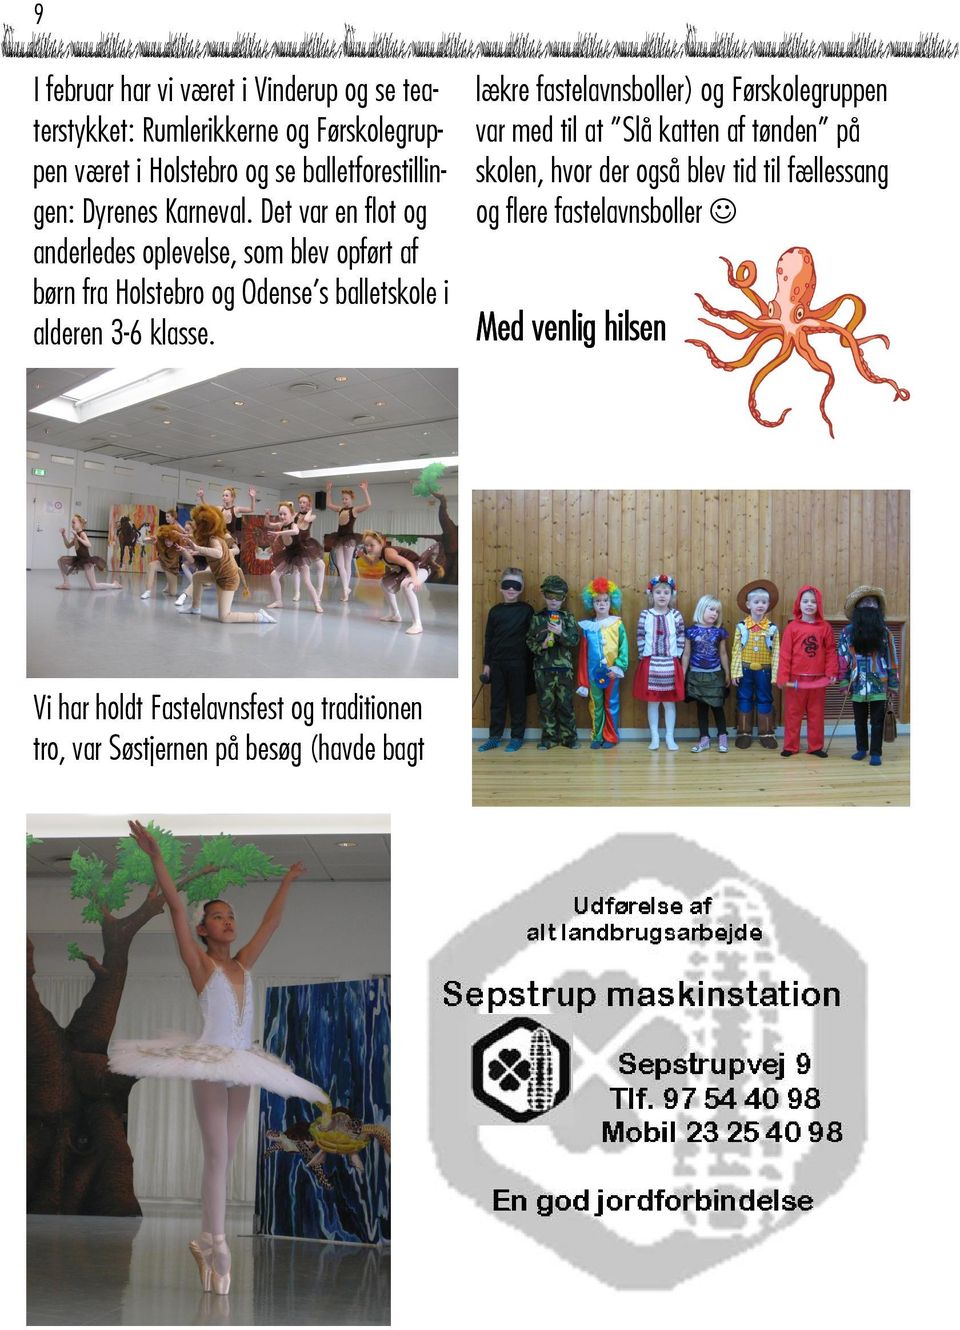 Det var en flot og anderledes oplevelse, som blev opført af børn fra Holstebro og Odense s balletskole i alderen 3-6 klasse.